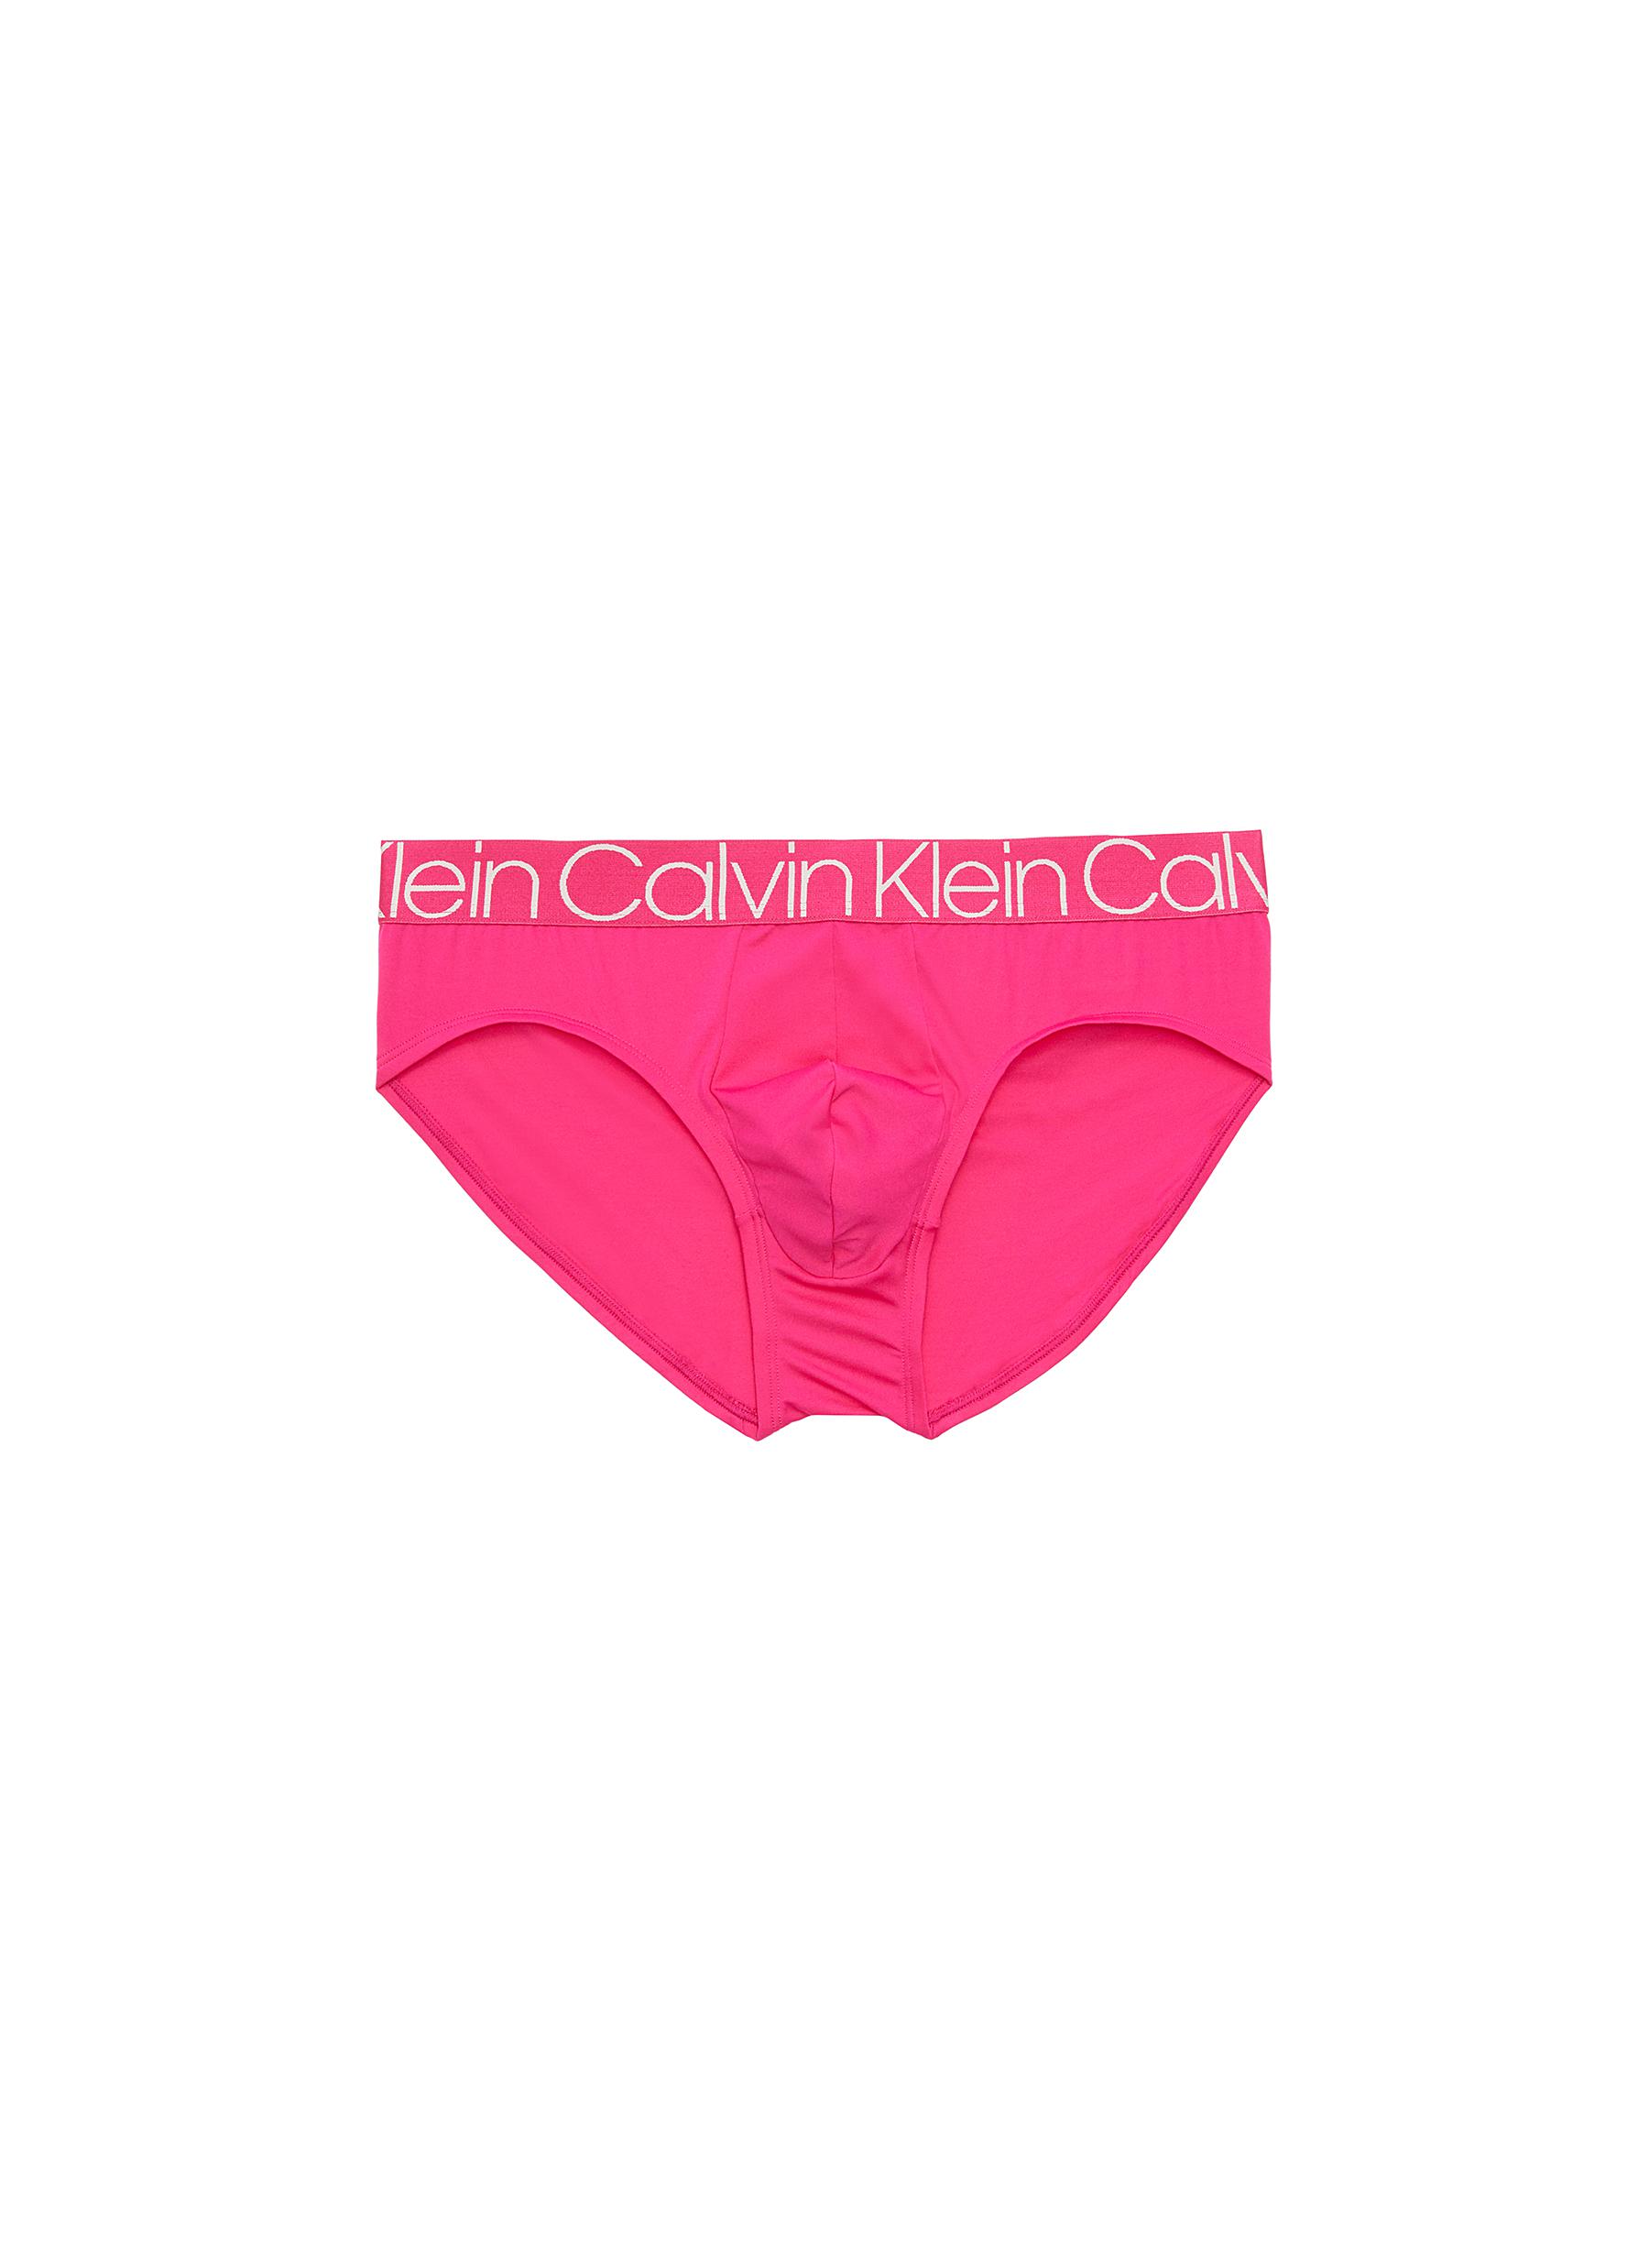 mens pink calvin klein underwear